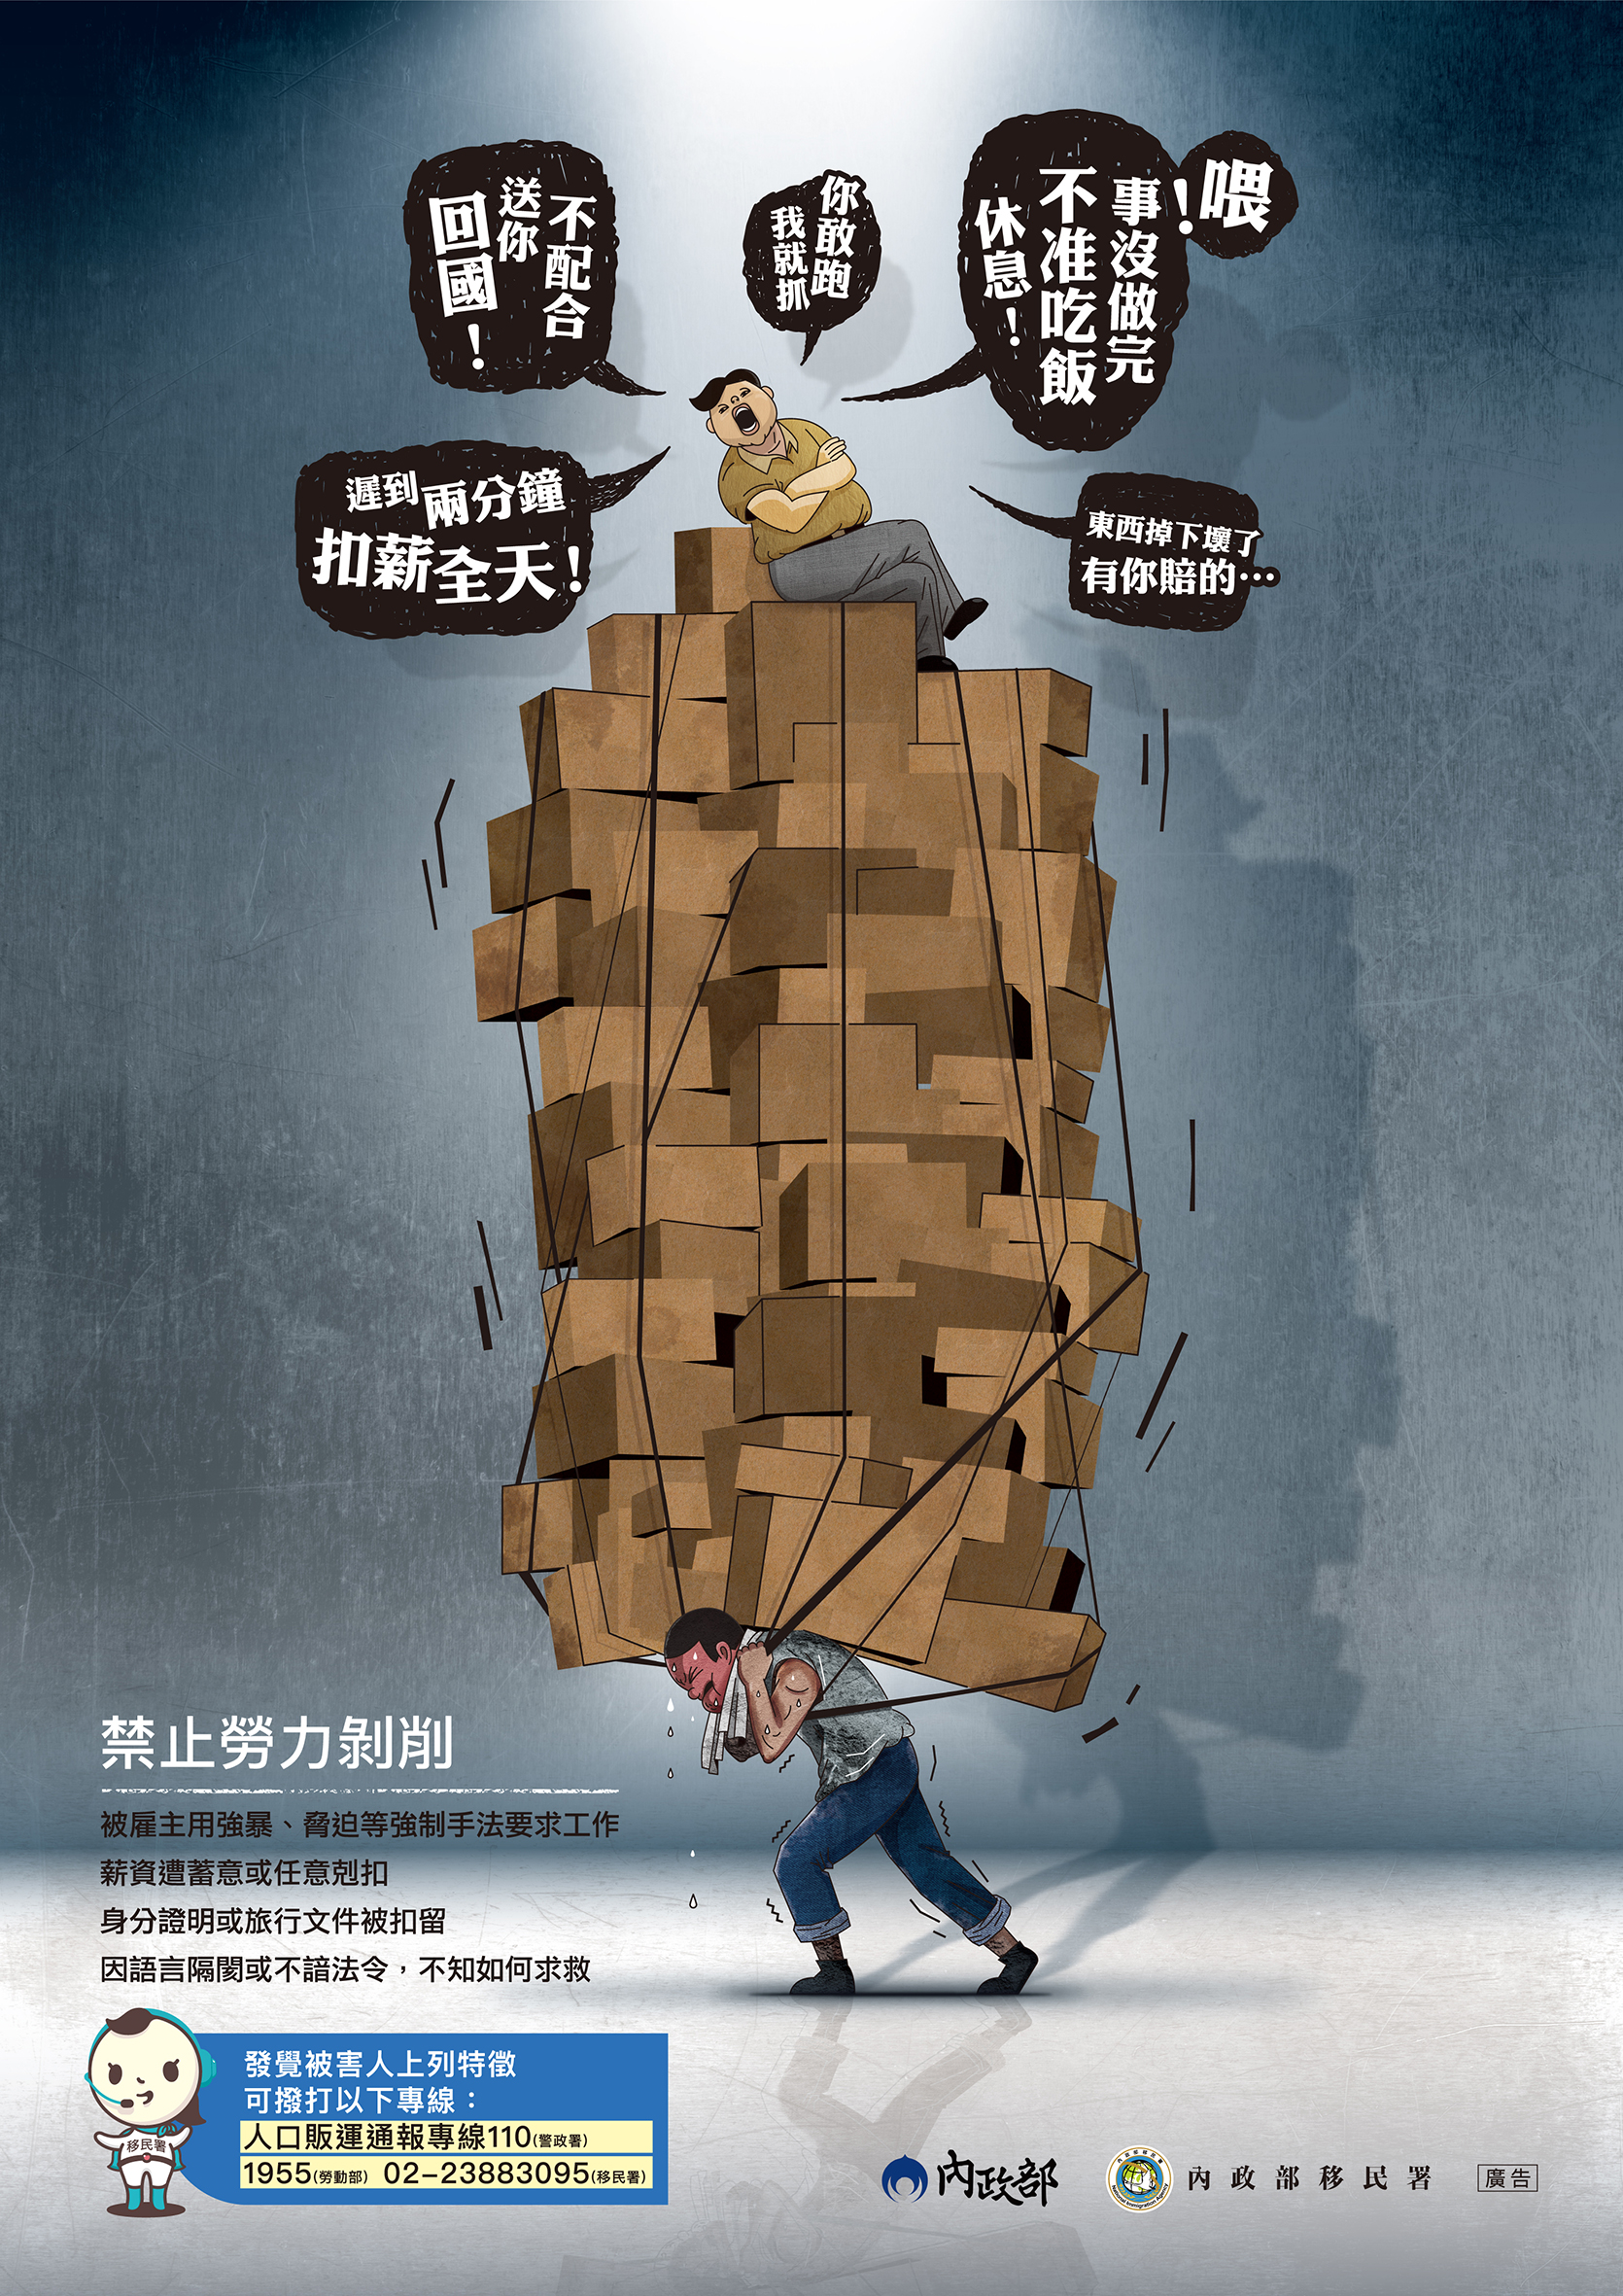 防制人口販運宣導海報-禁止勞力剝削-中文